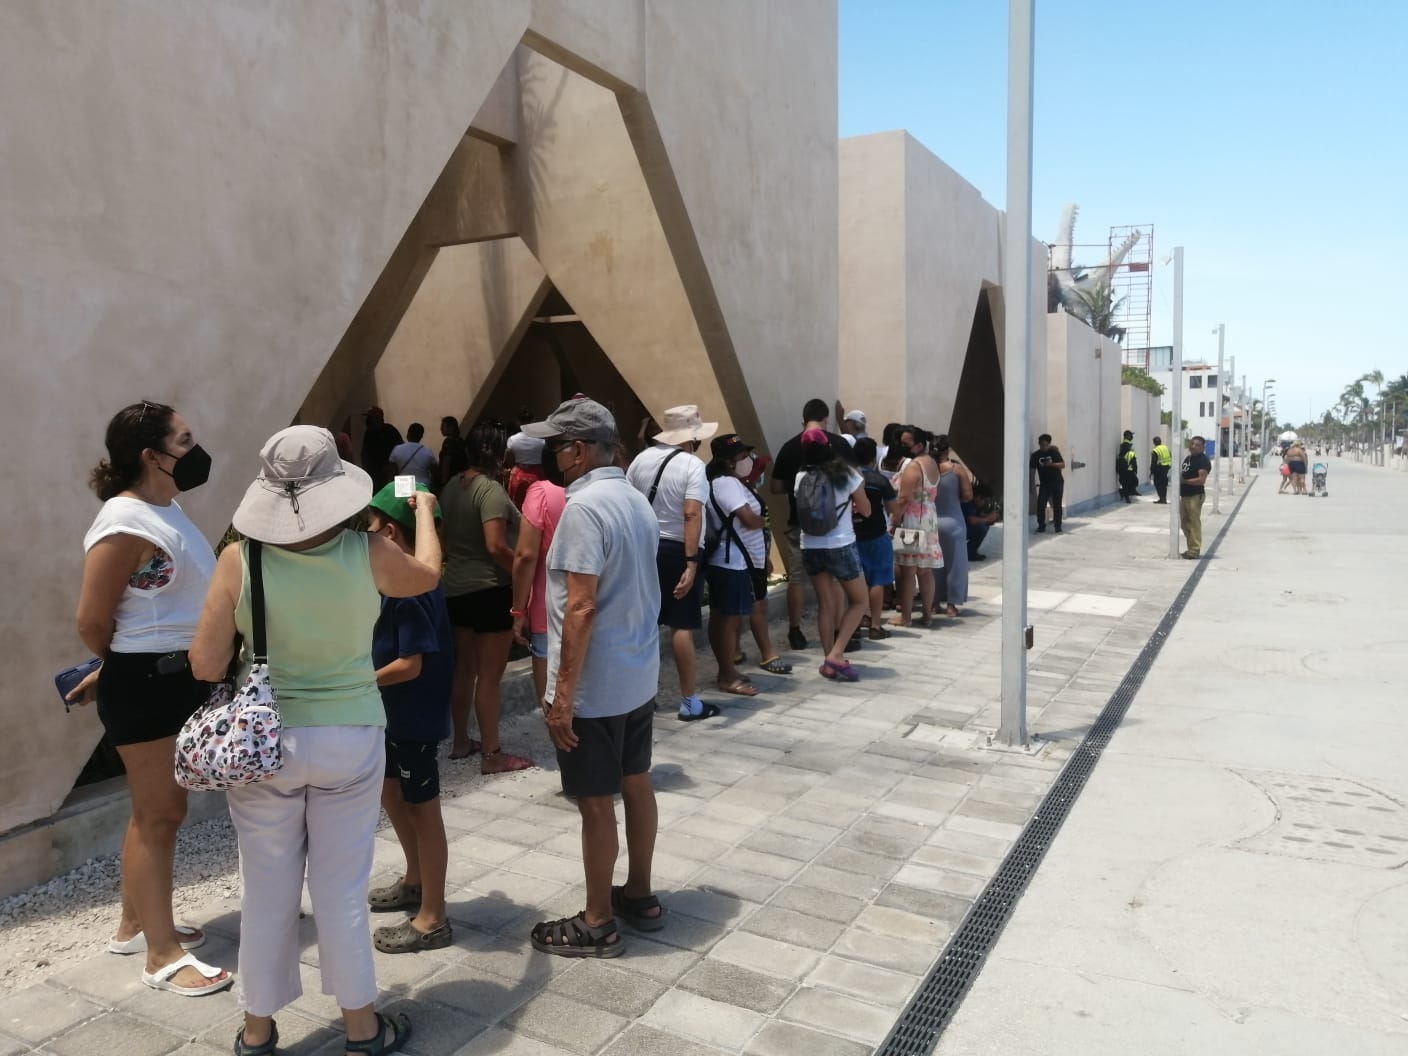 Museo del Meteorito en Progreso abre sus puertas de manera oficial este martes: VIDEO